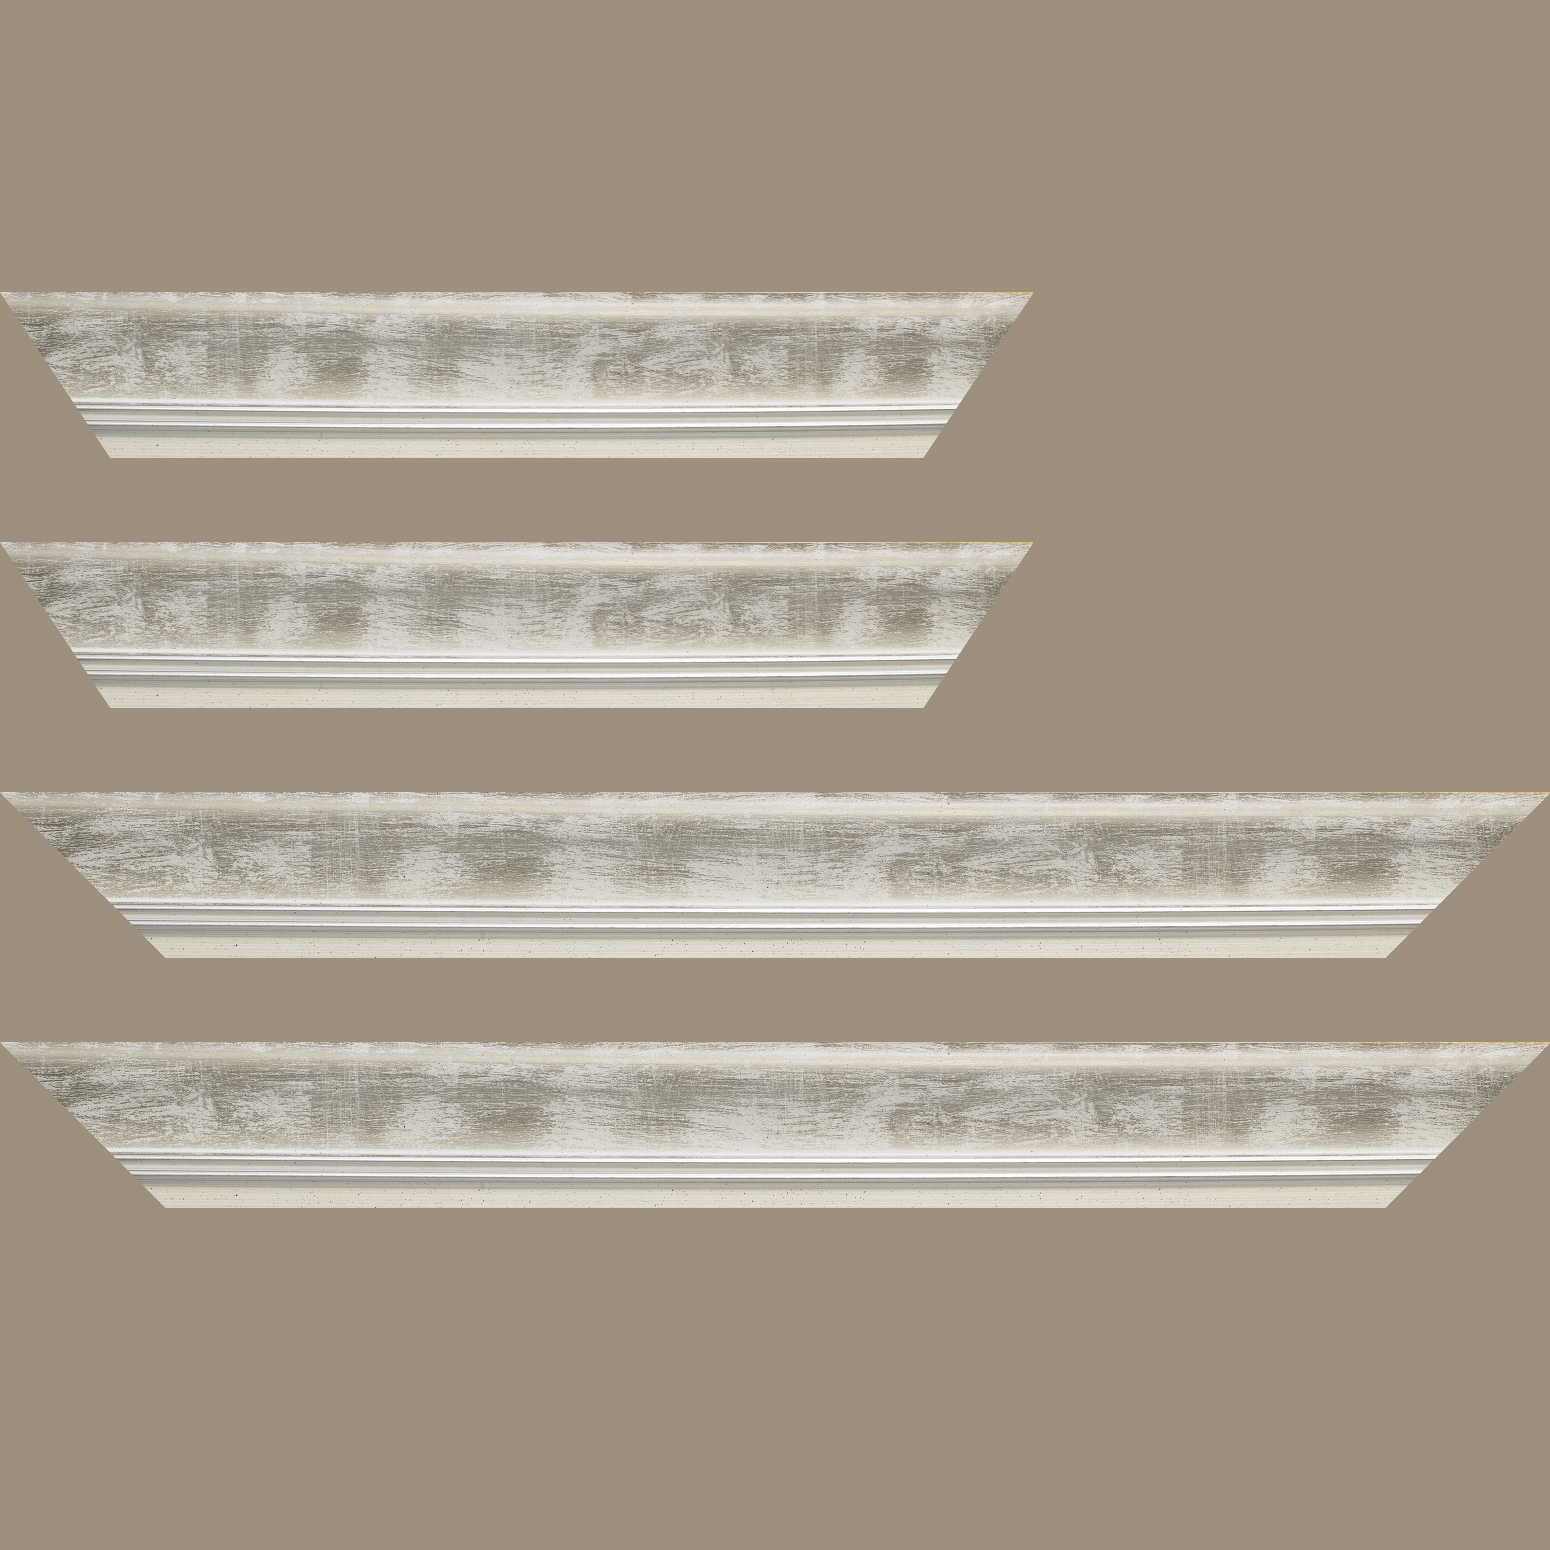 Baguette service précoupé Bois profil incurvé largeur 5.7cm de couleur blanc fond argent marie louise blanche mouchetée filet argent intégré